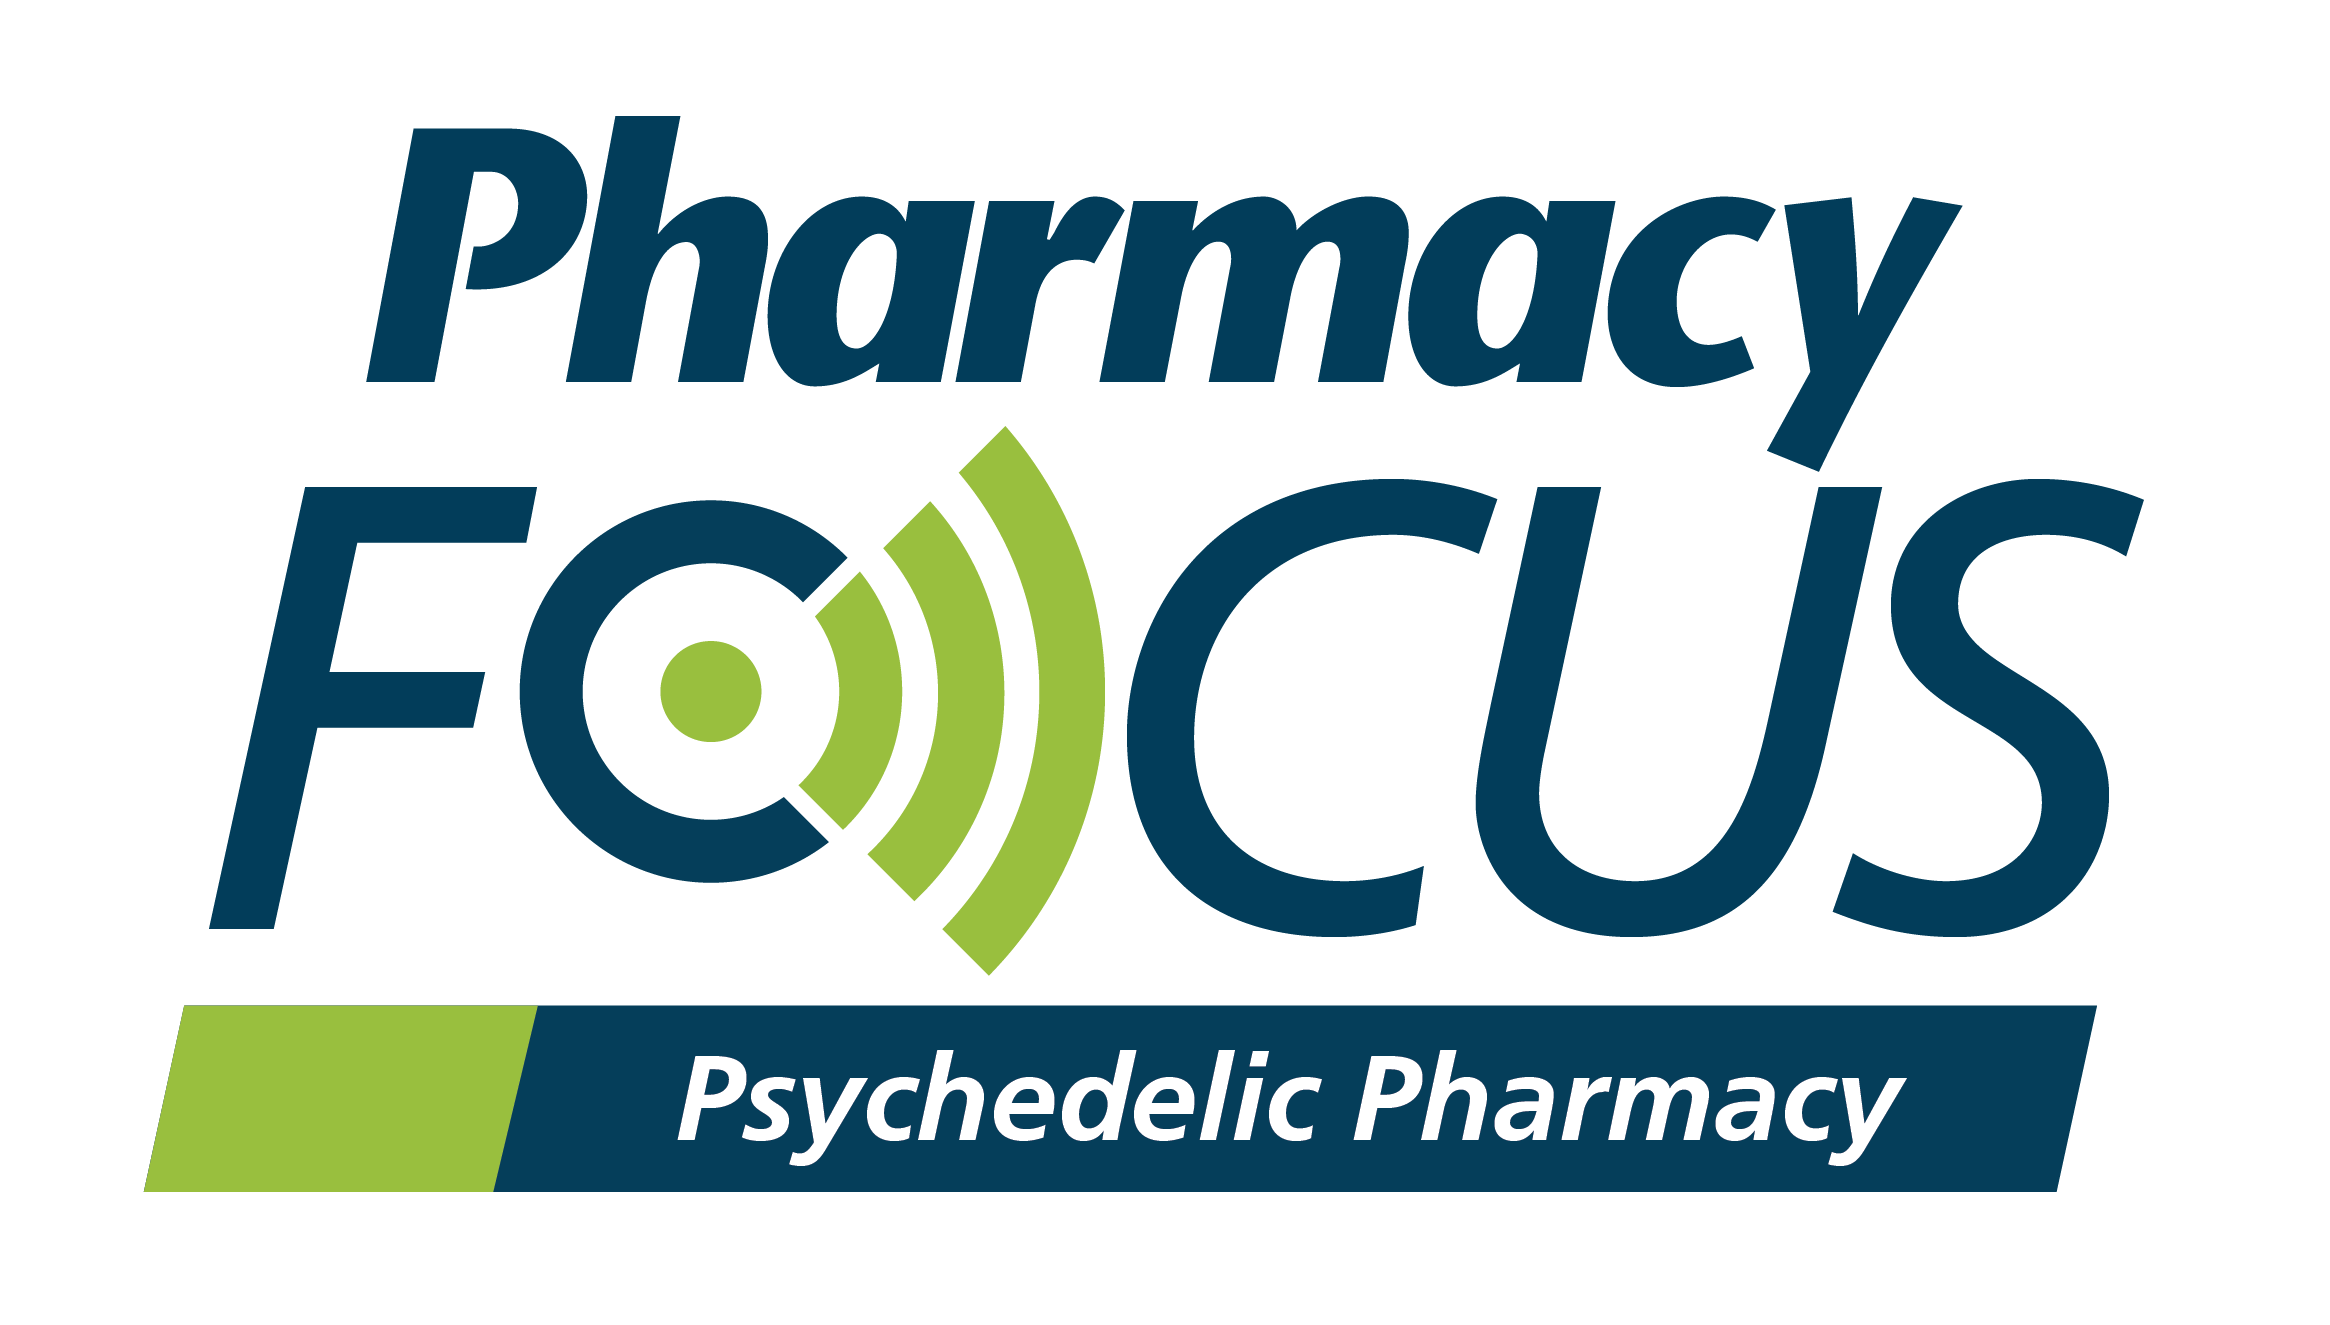 Pharmacy Focus: Psychedelic Pharmacy